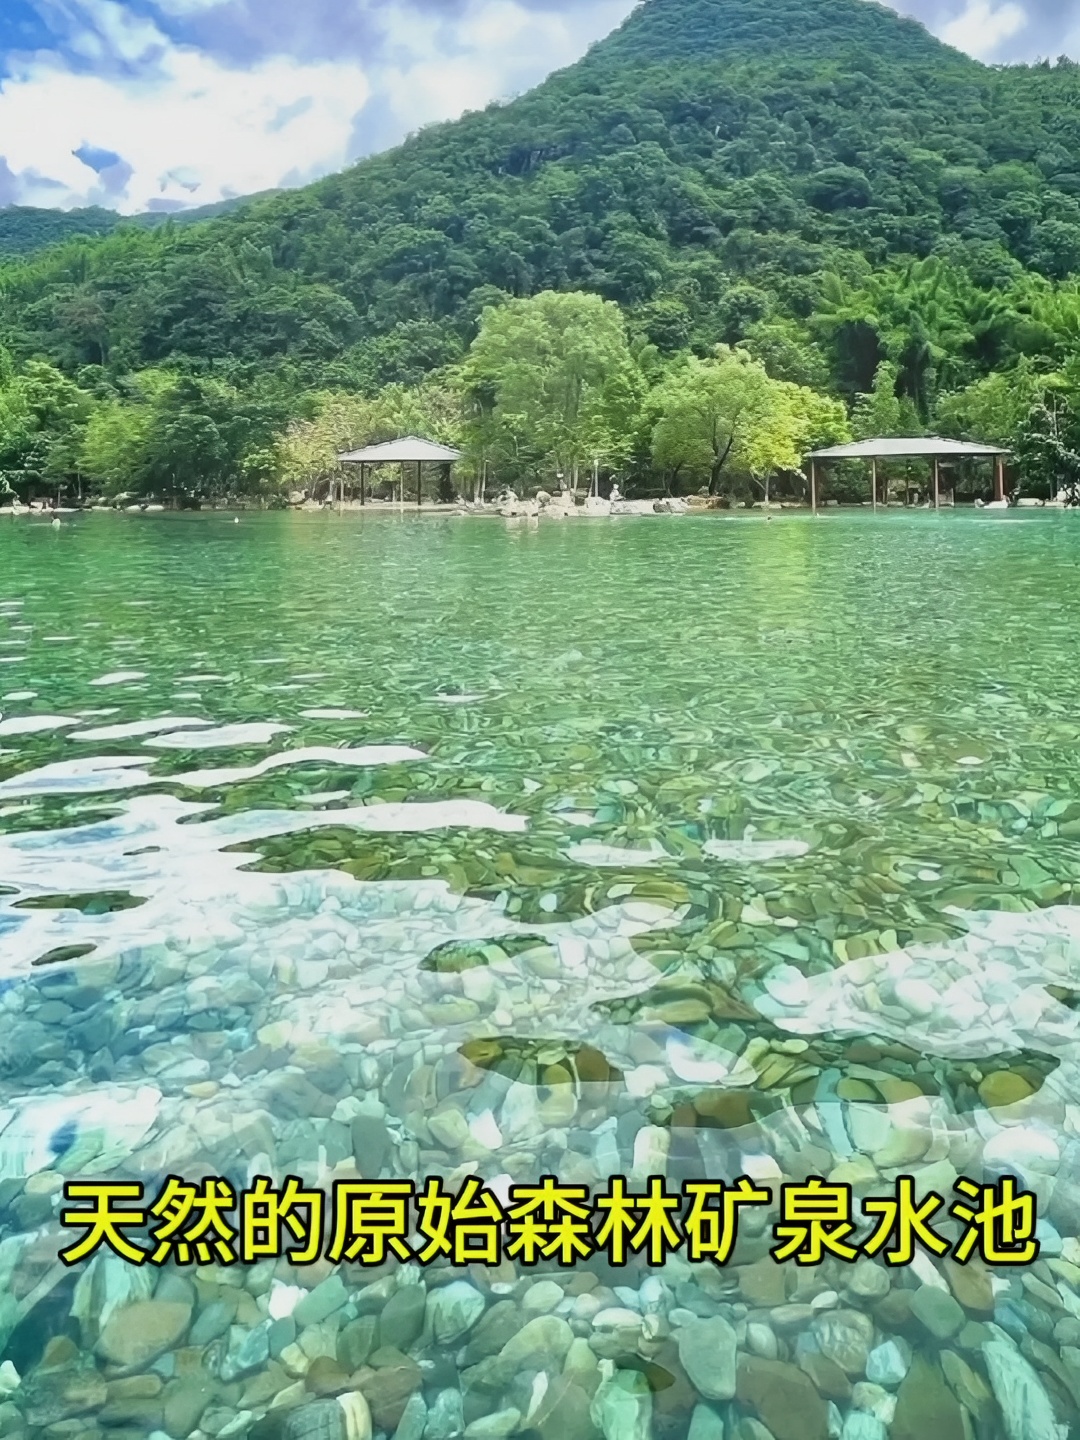 广东人夏天玩干净水的好地方。